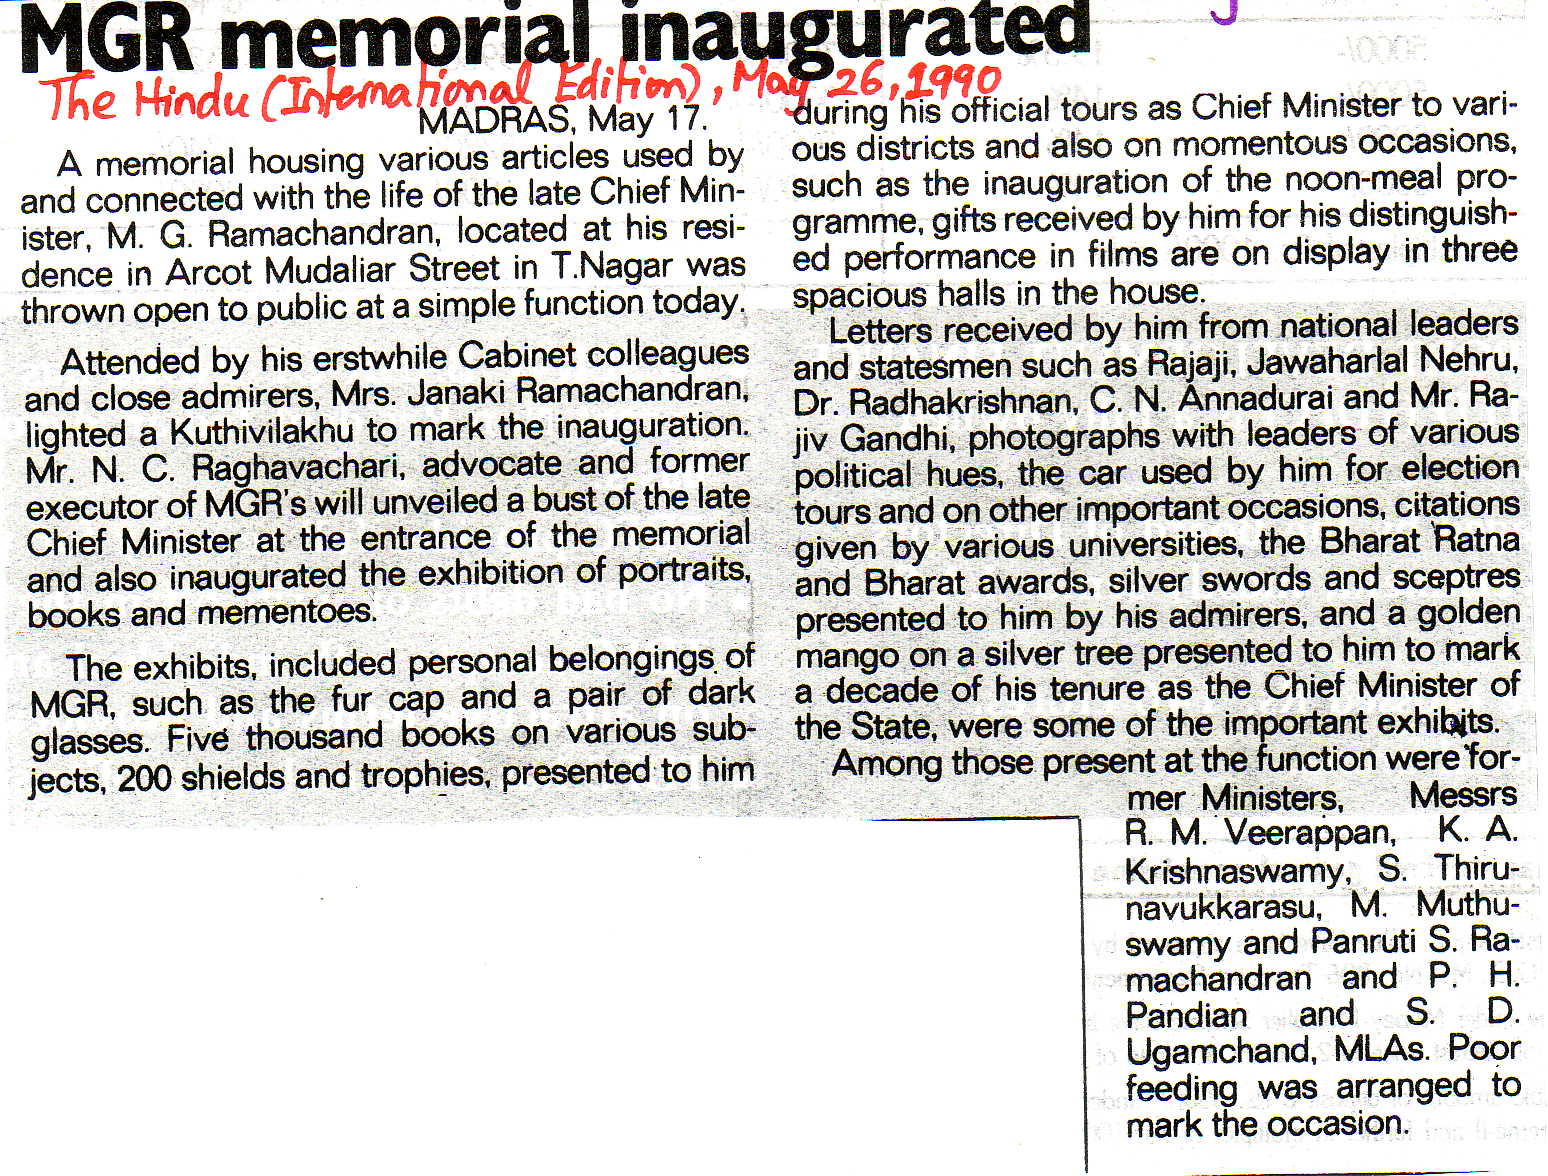 MGR memorial inaugurated 1990